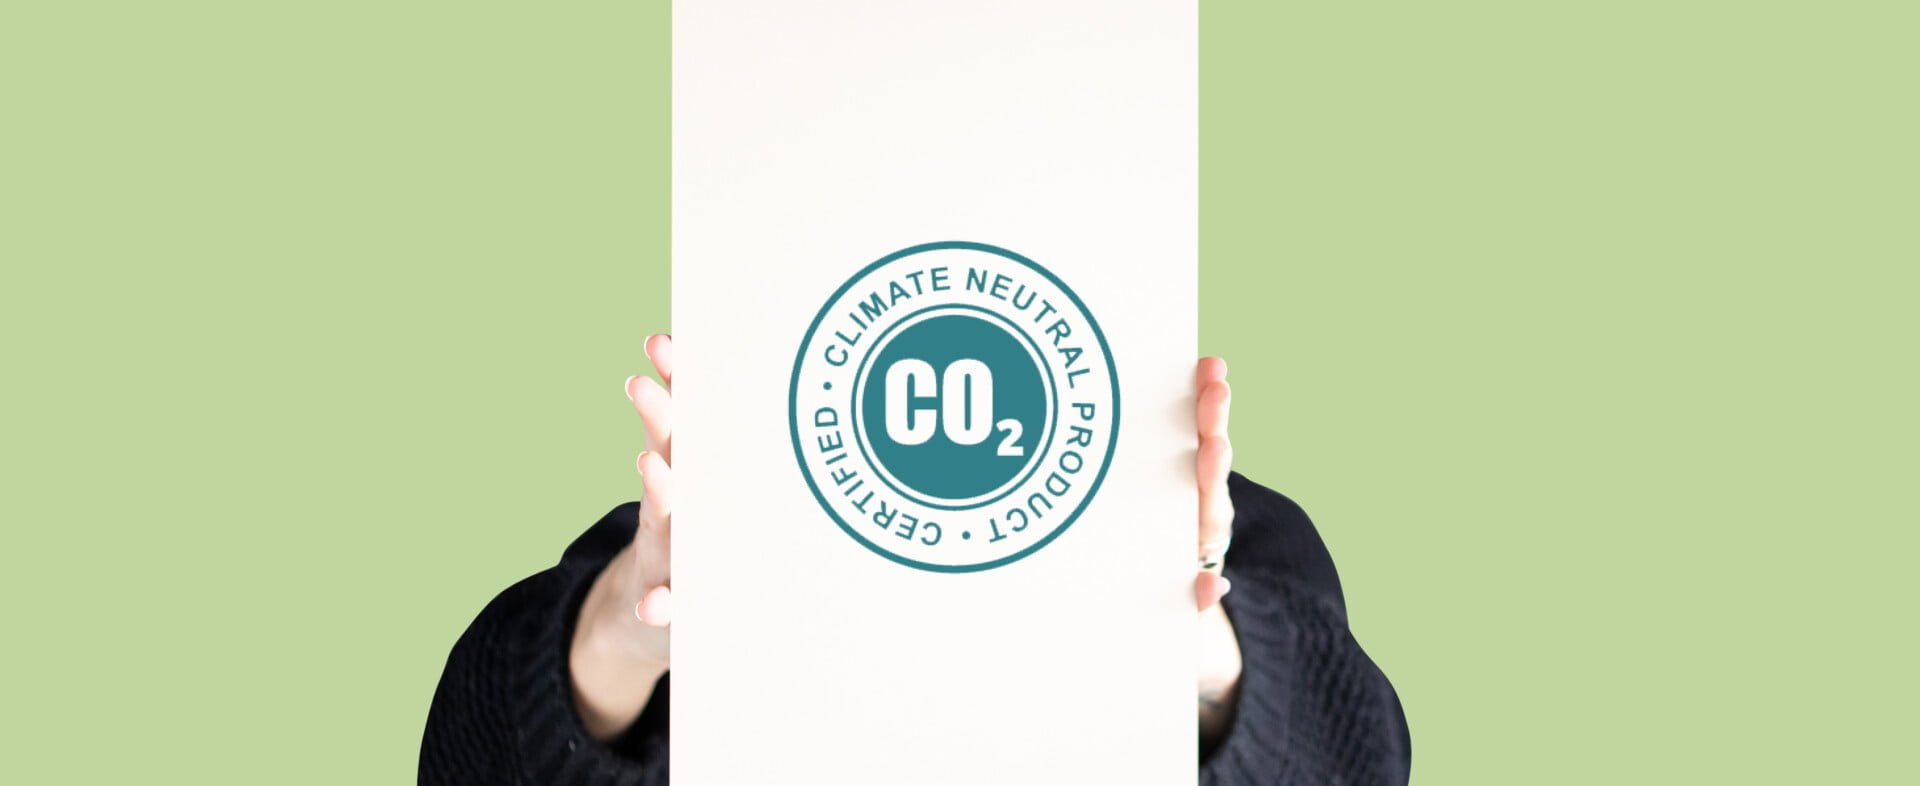 PAPERWISE ER CO2-NEUTRAL: HVAD ER DER GALT MED DET?